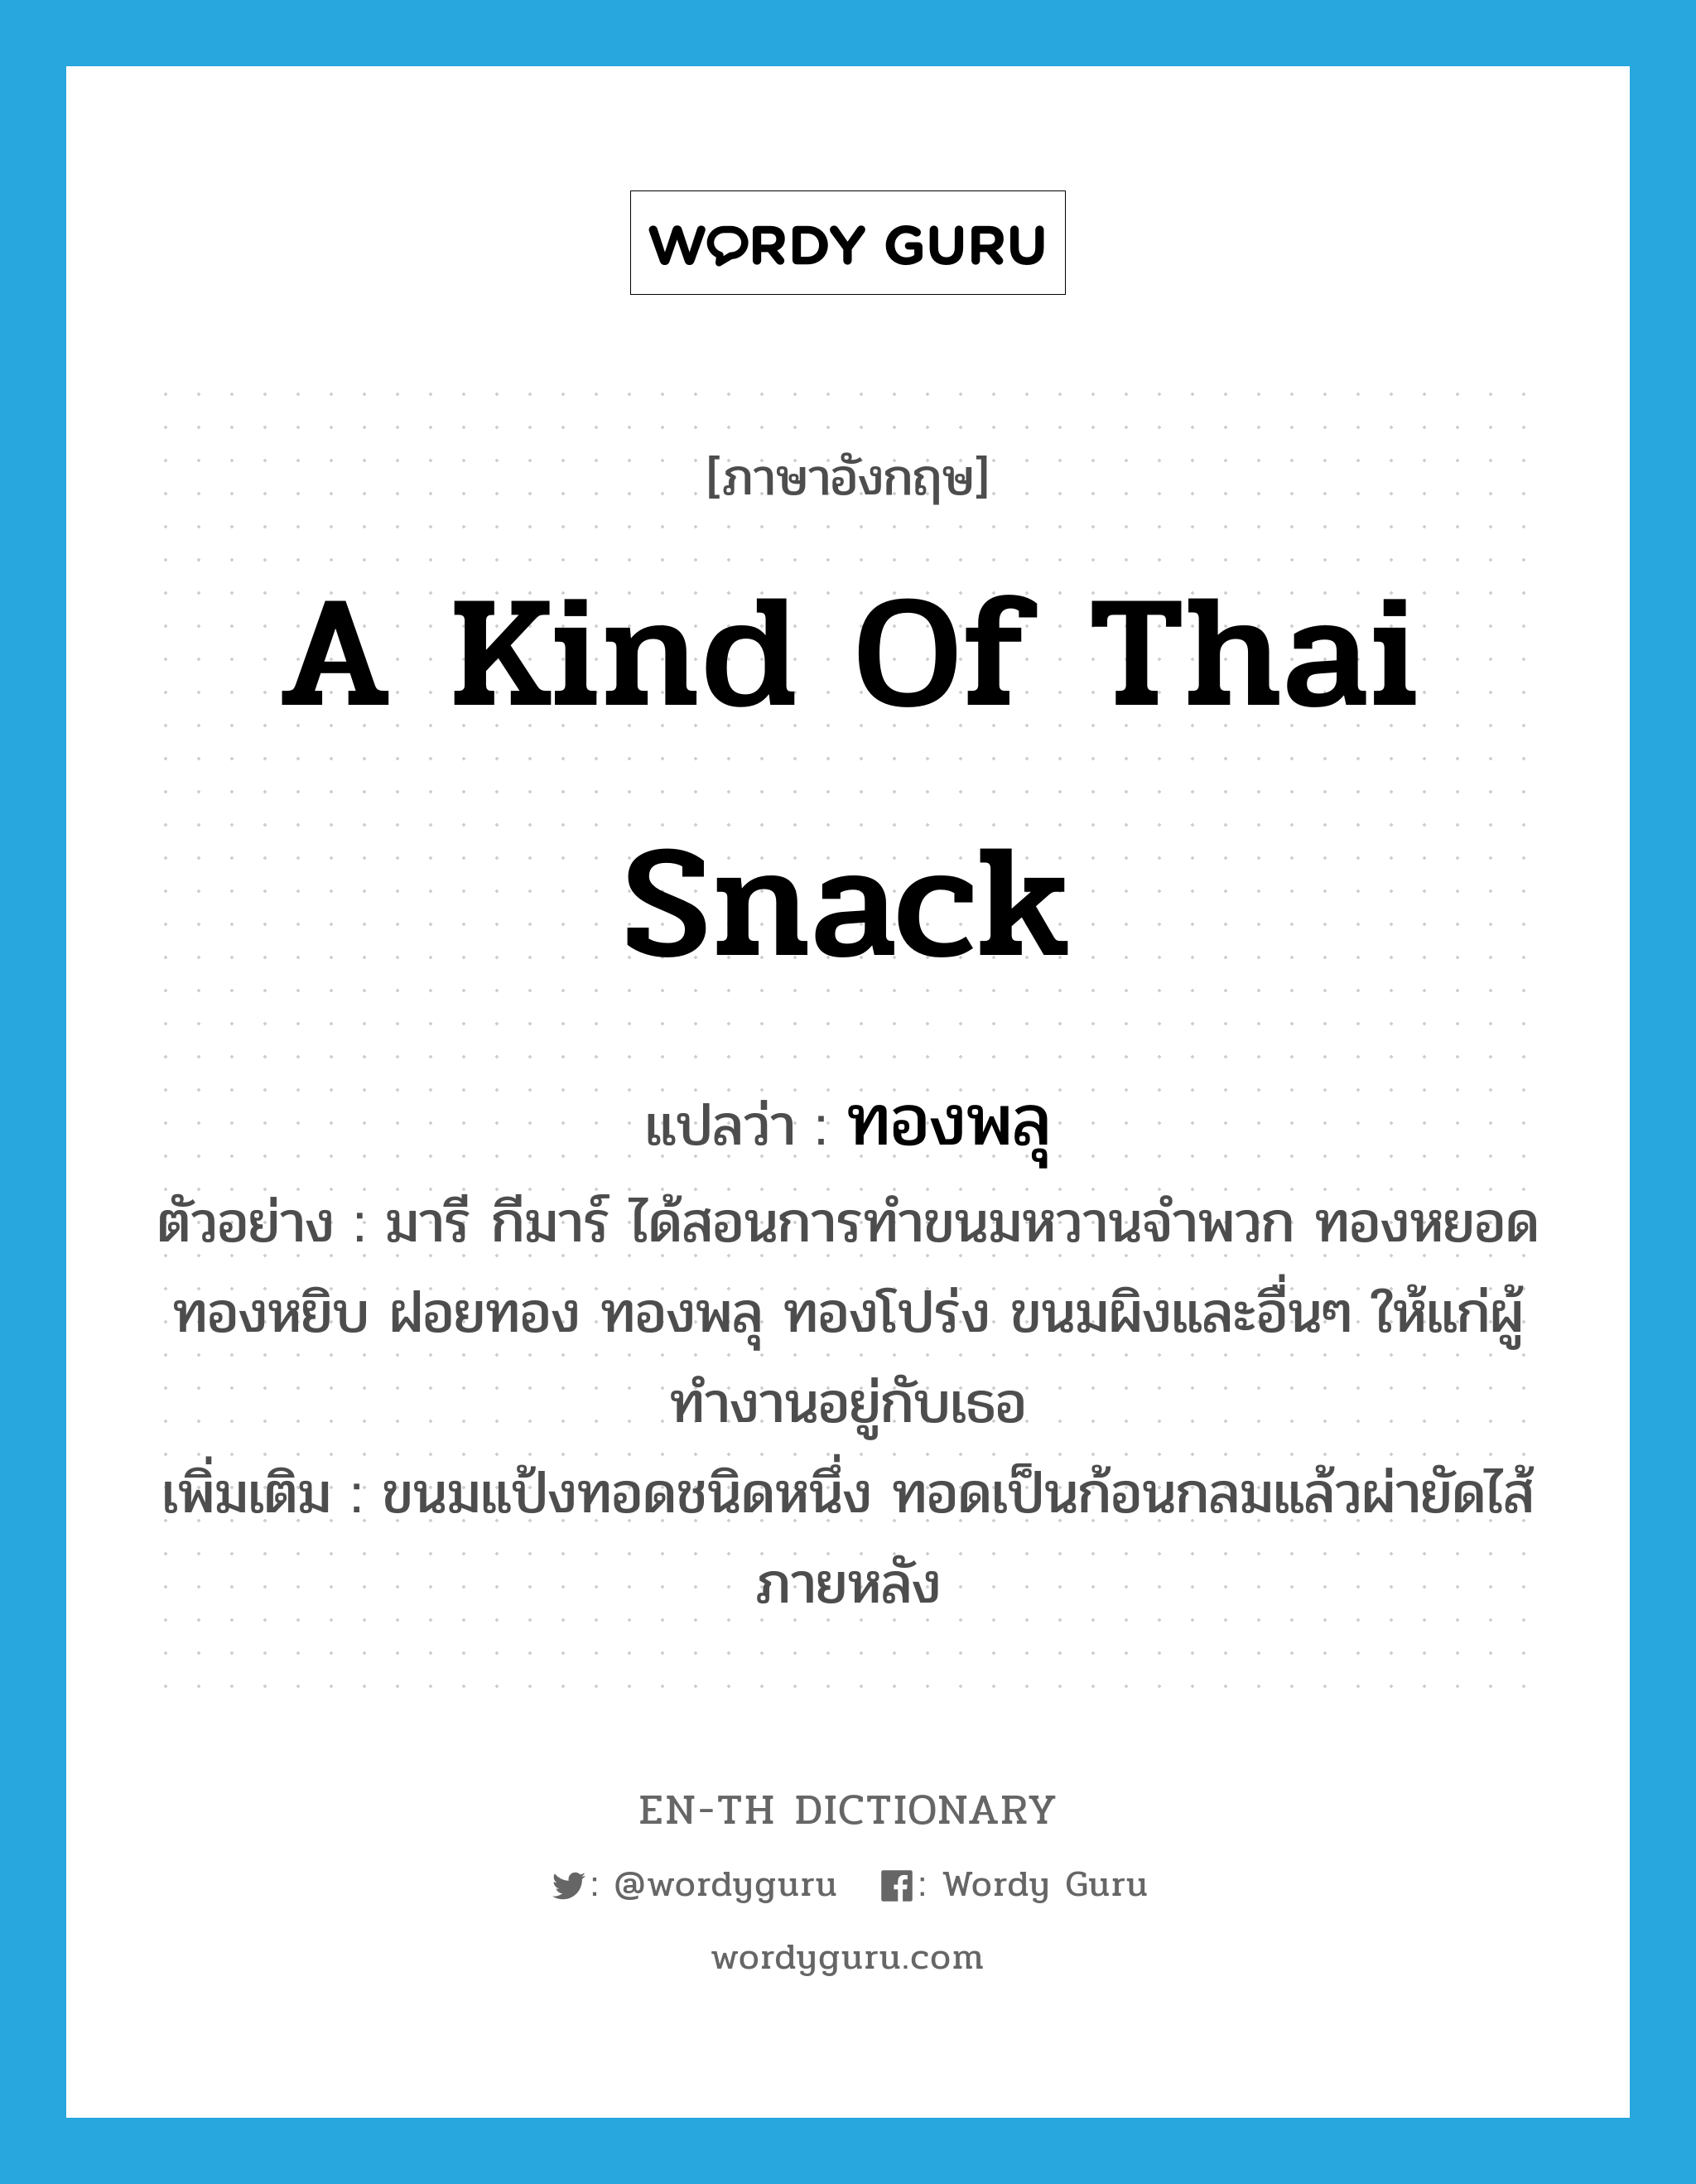 a kind of Thai snack แปลว่า?, คำศัพท์ภาษาอังกฤษ a kind of Thai snack แปลว่า ทองพลุ ประเภท N ตัวอย่าง มารี กีมาร์ ได้สอนการทำขนมหวานจำพวก ทองหยอด ทองหยิบ ฝอยทอง ทองพลุ ทองโปร่ง ขนมผิงและอื่นๆ ให้แก่ผู้ทำงานอยู่กับเธอ เพิ่มเติม ขนมแป้งทอดชนิดหนึ่ง ทอดเป็นก้อนกลมแล้วผ่ายัดไส้ภายหลัง หมวด N